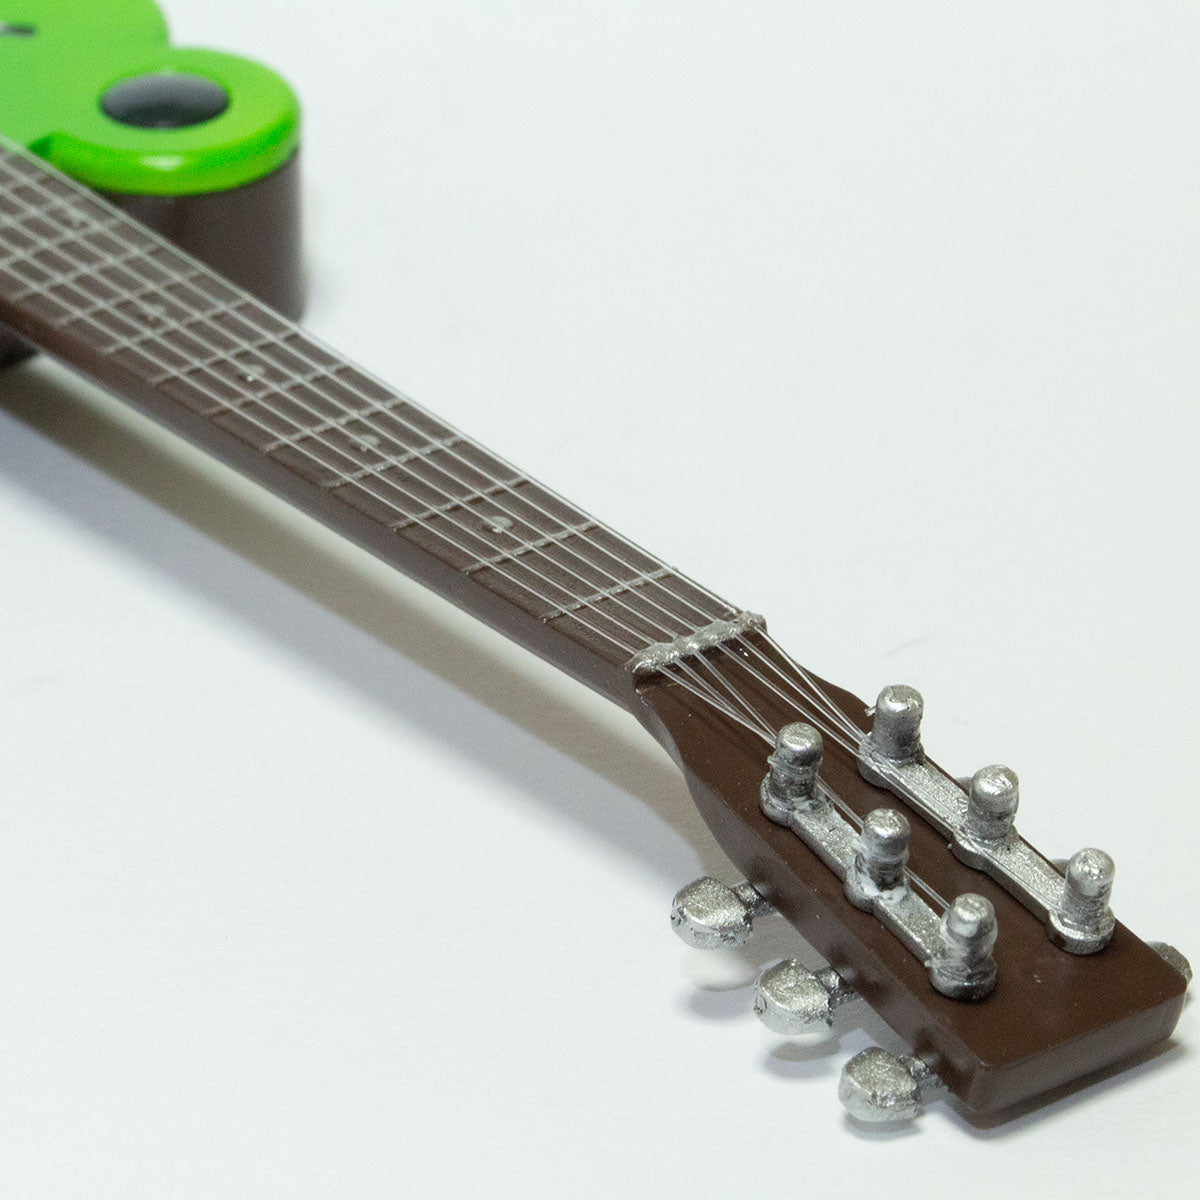 クラシックで可愛いカエル型のアコースティックギター